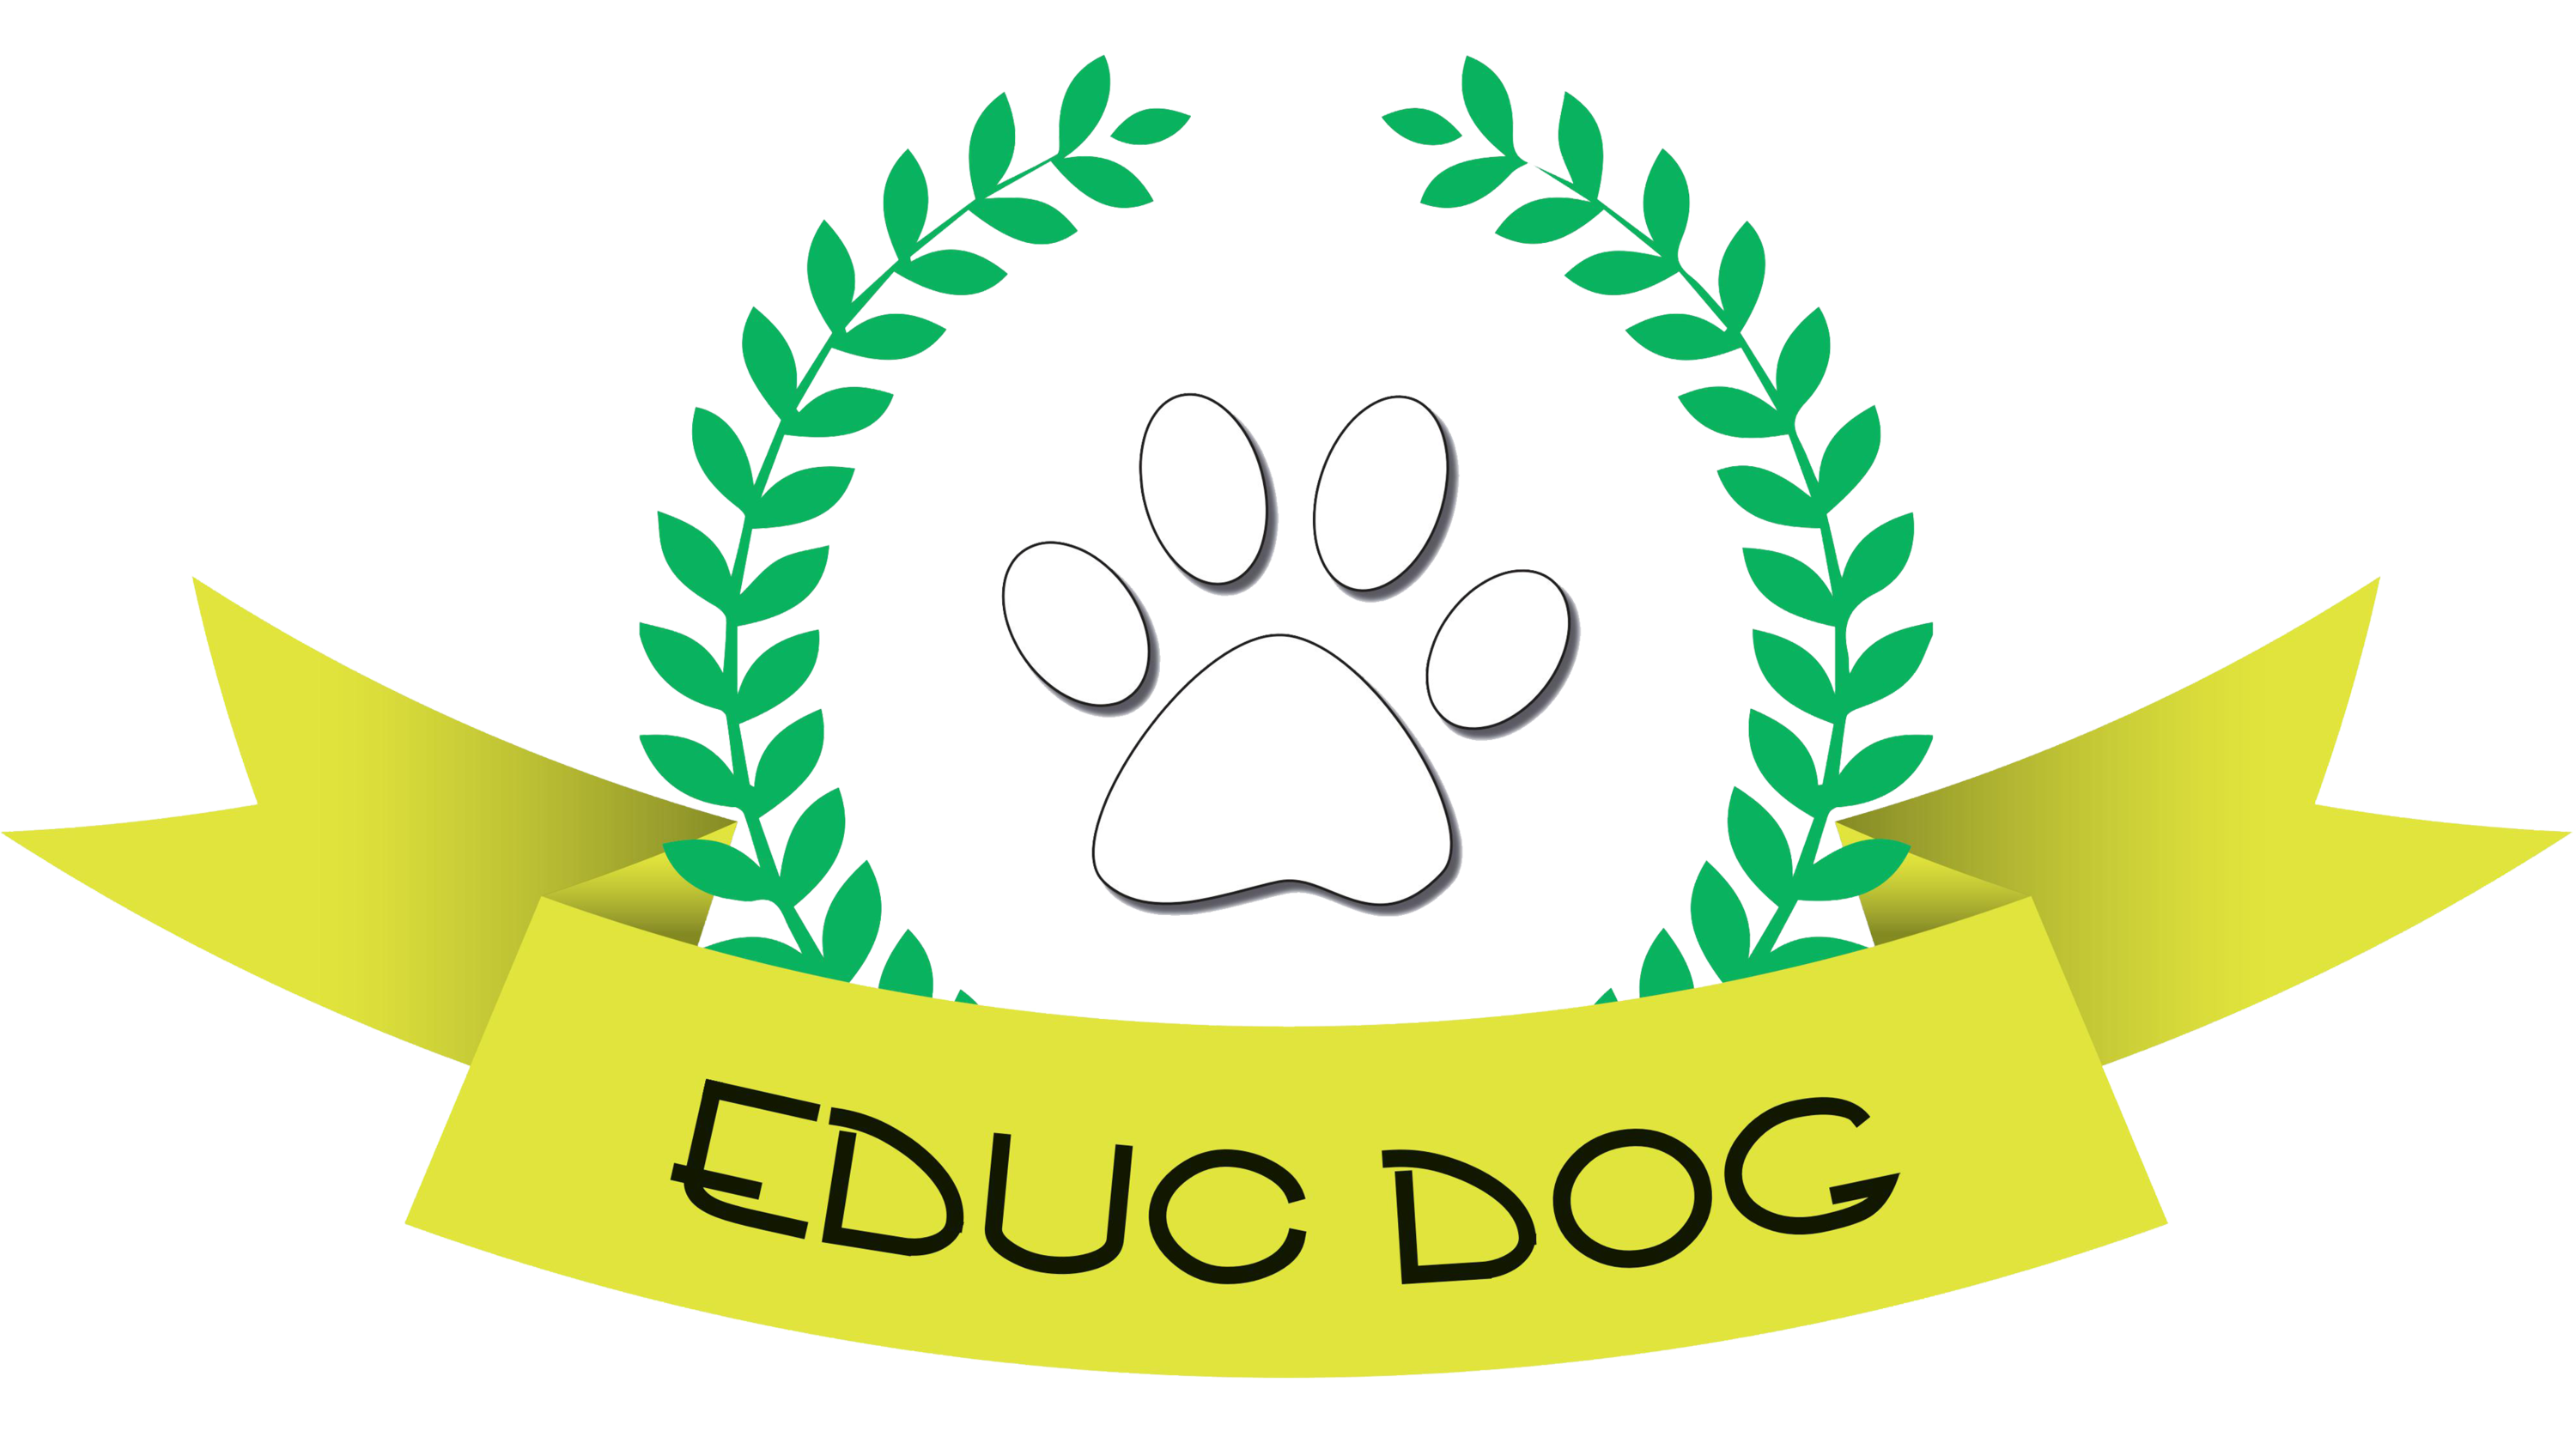 EDUC DOG